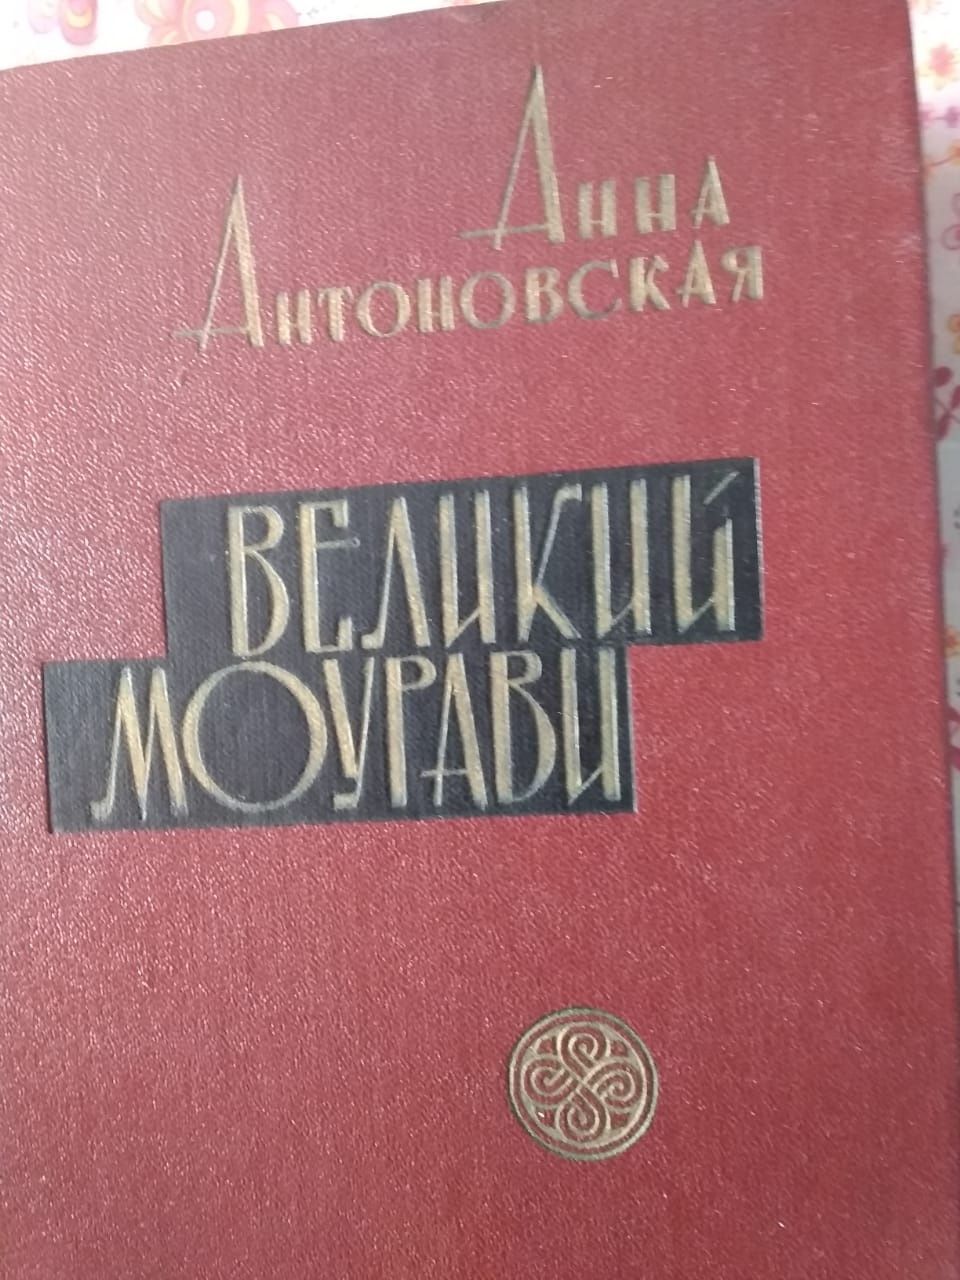 Антоновская Анна "Великий Моурави в 6 томах "